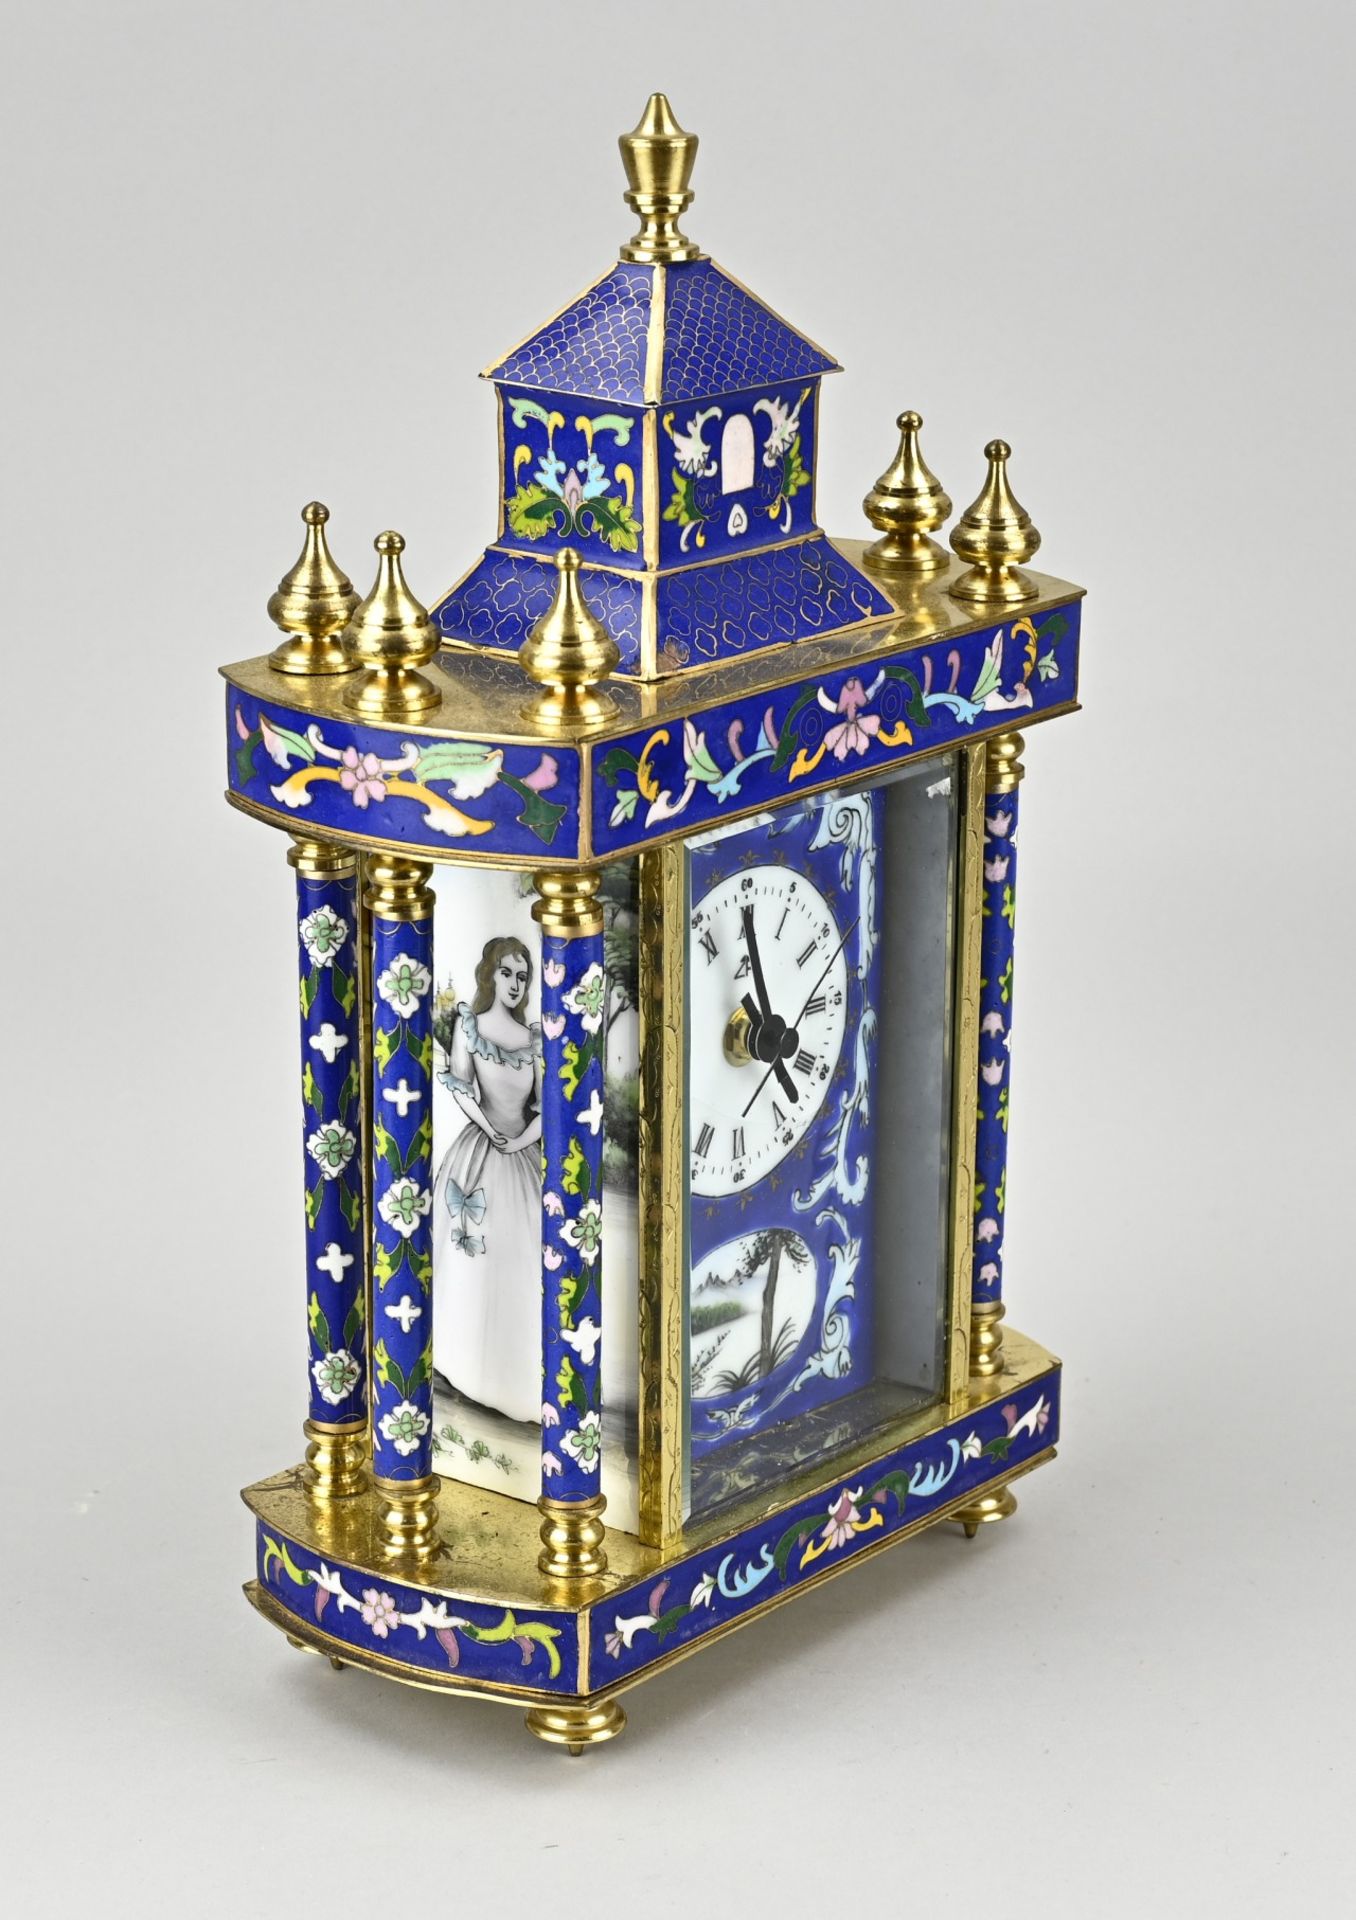 CloisonnÃ© clock - Image 2 of 2